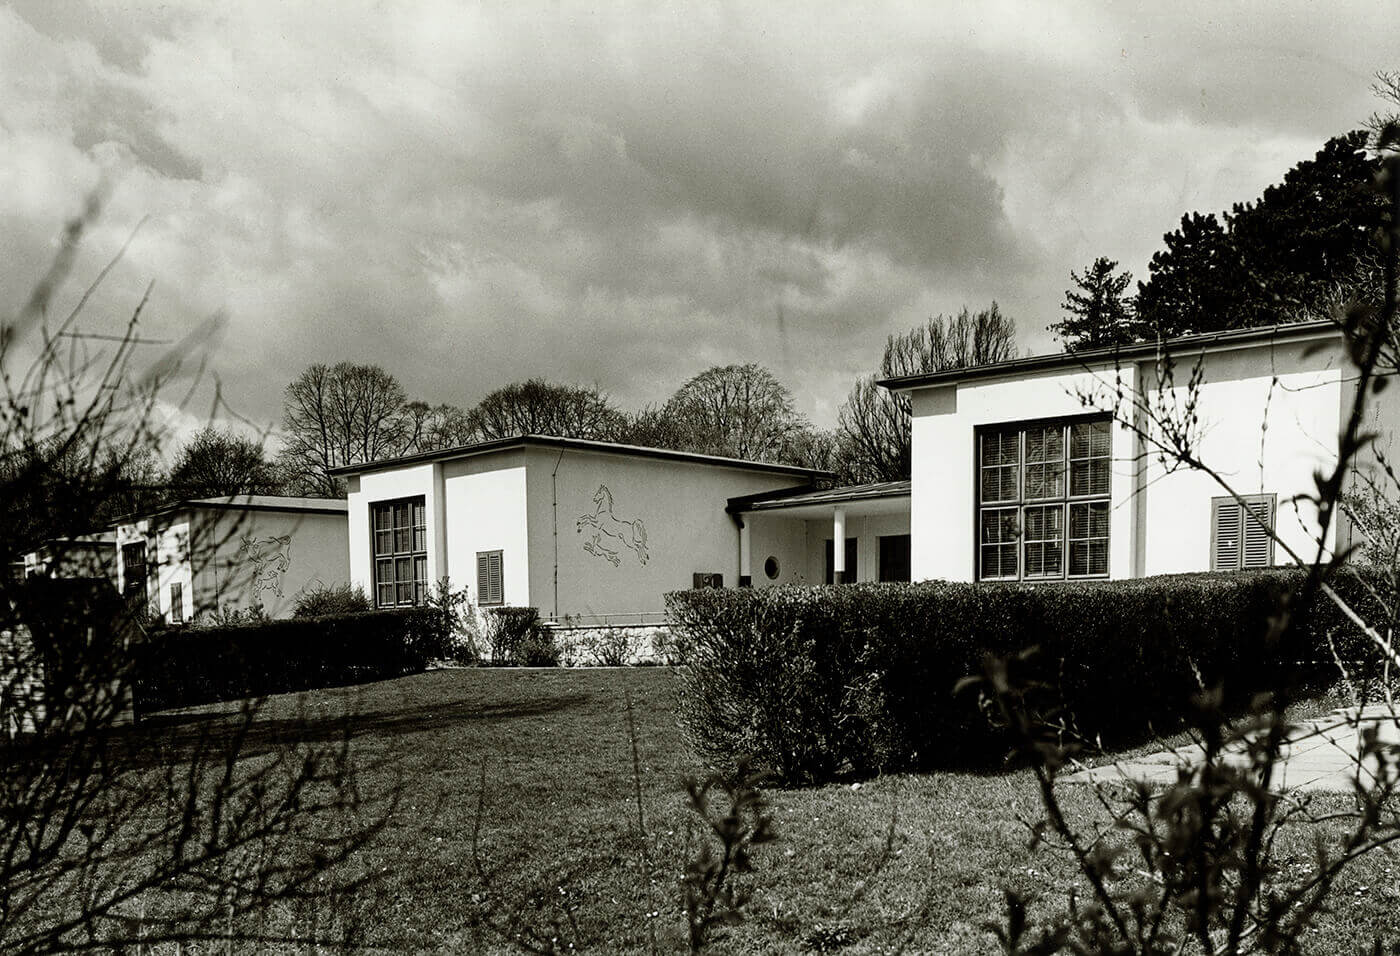 Sonderkindergarten Schweizer Spende, errichtet 1948/1949, Foto: Margaritha Spillutini, 1984, Wien Museum. Der Kindergarten im Auer-Welsbach-Park im 15. Bezirk wurde aus den Mitteln der Schweizerspende gebaut. 